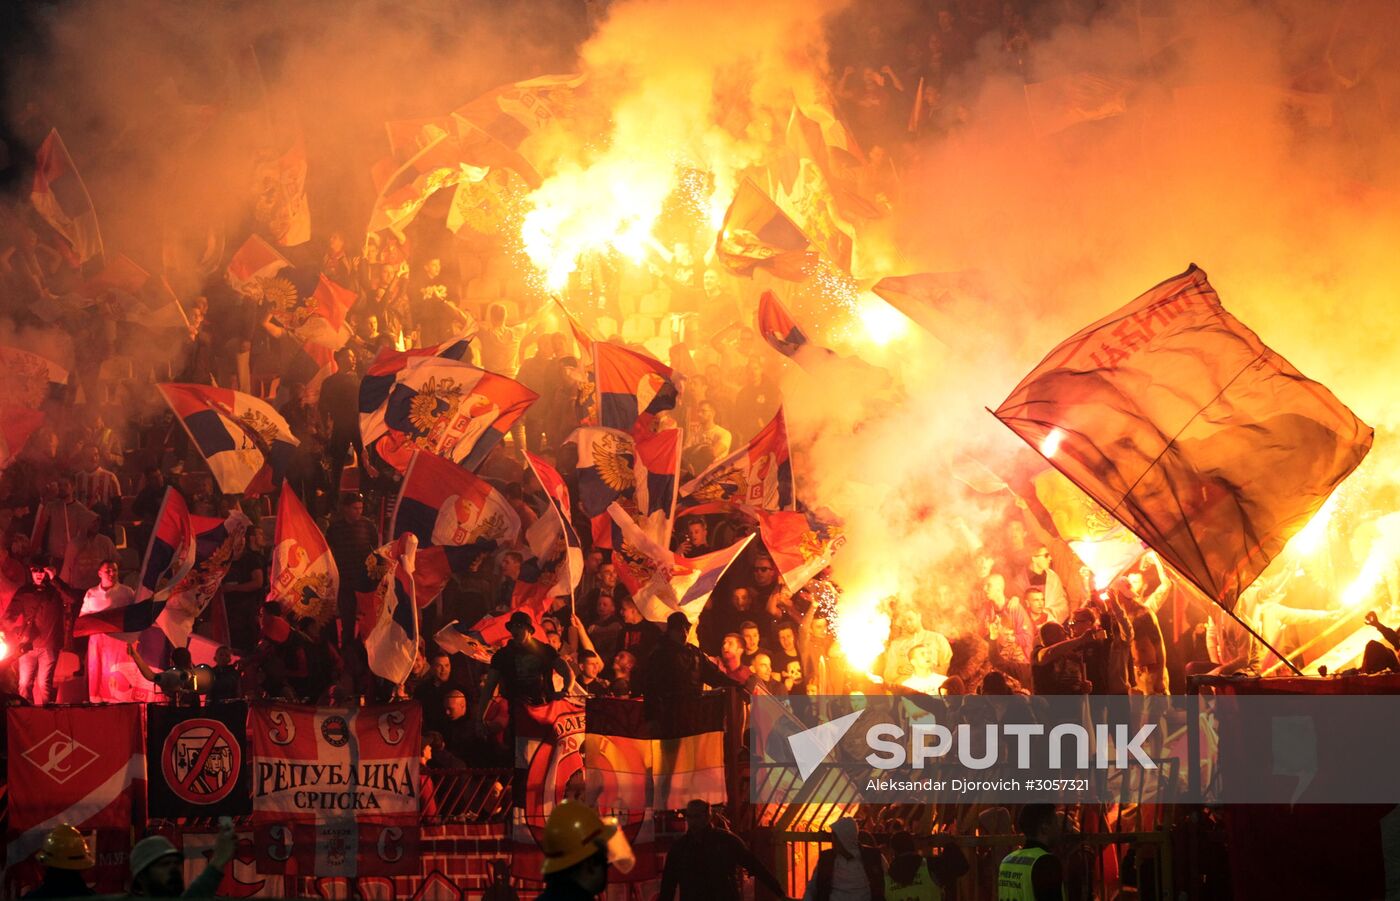 Crvena Zvezda vs. Spartak friendly football match